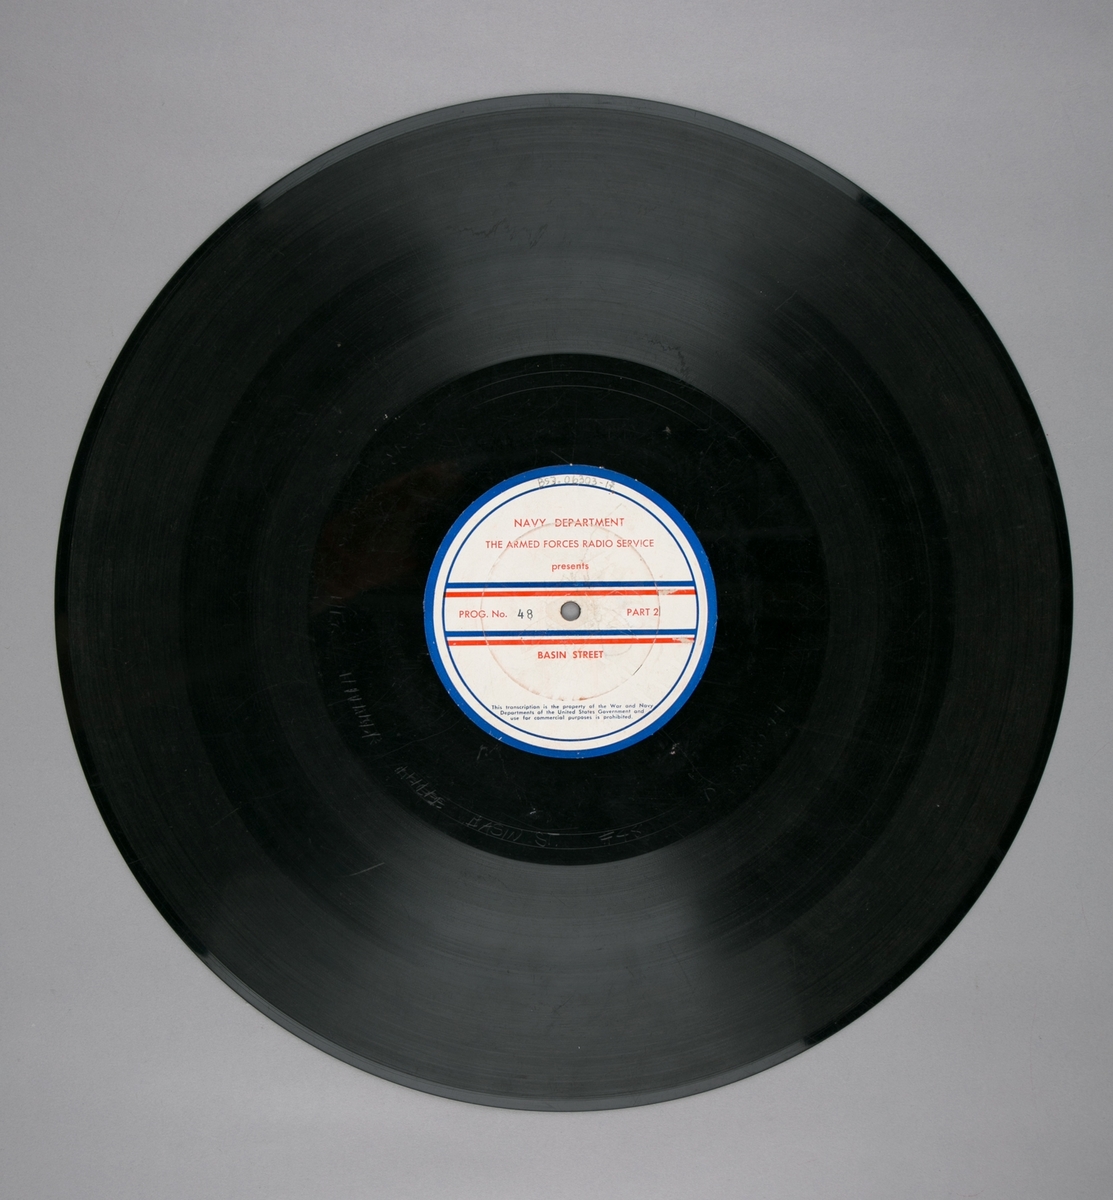 Grammofonplatesamling. LP-plate med tittel "The Armed Forces Radio Service" utgitt av Navy Department. Plate i svart vinyl spilles på platespiller med 33 1/3 omdreininger i minuttet (33-plate).